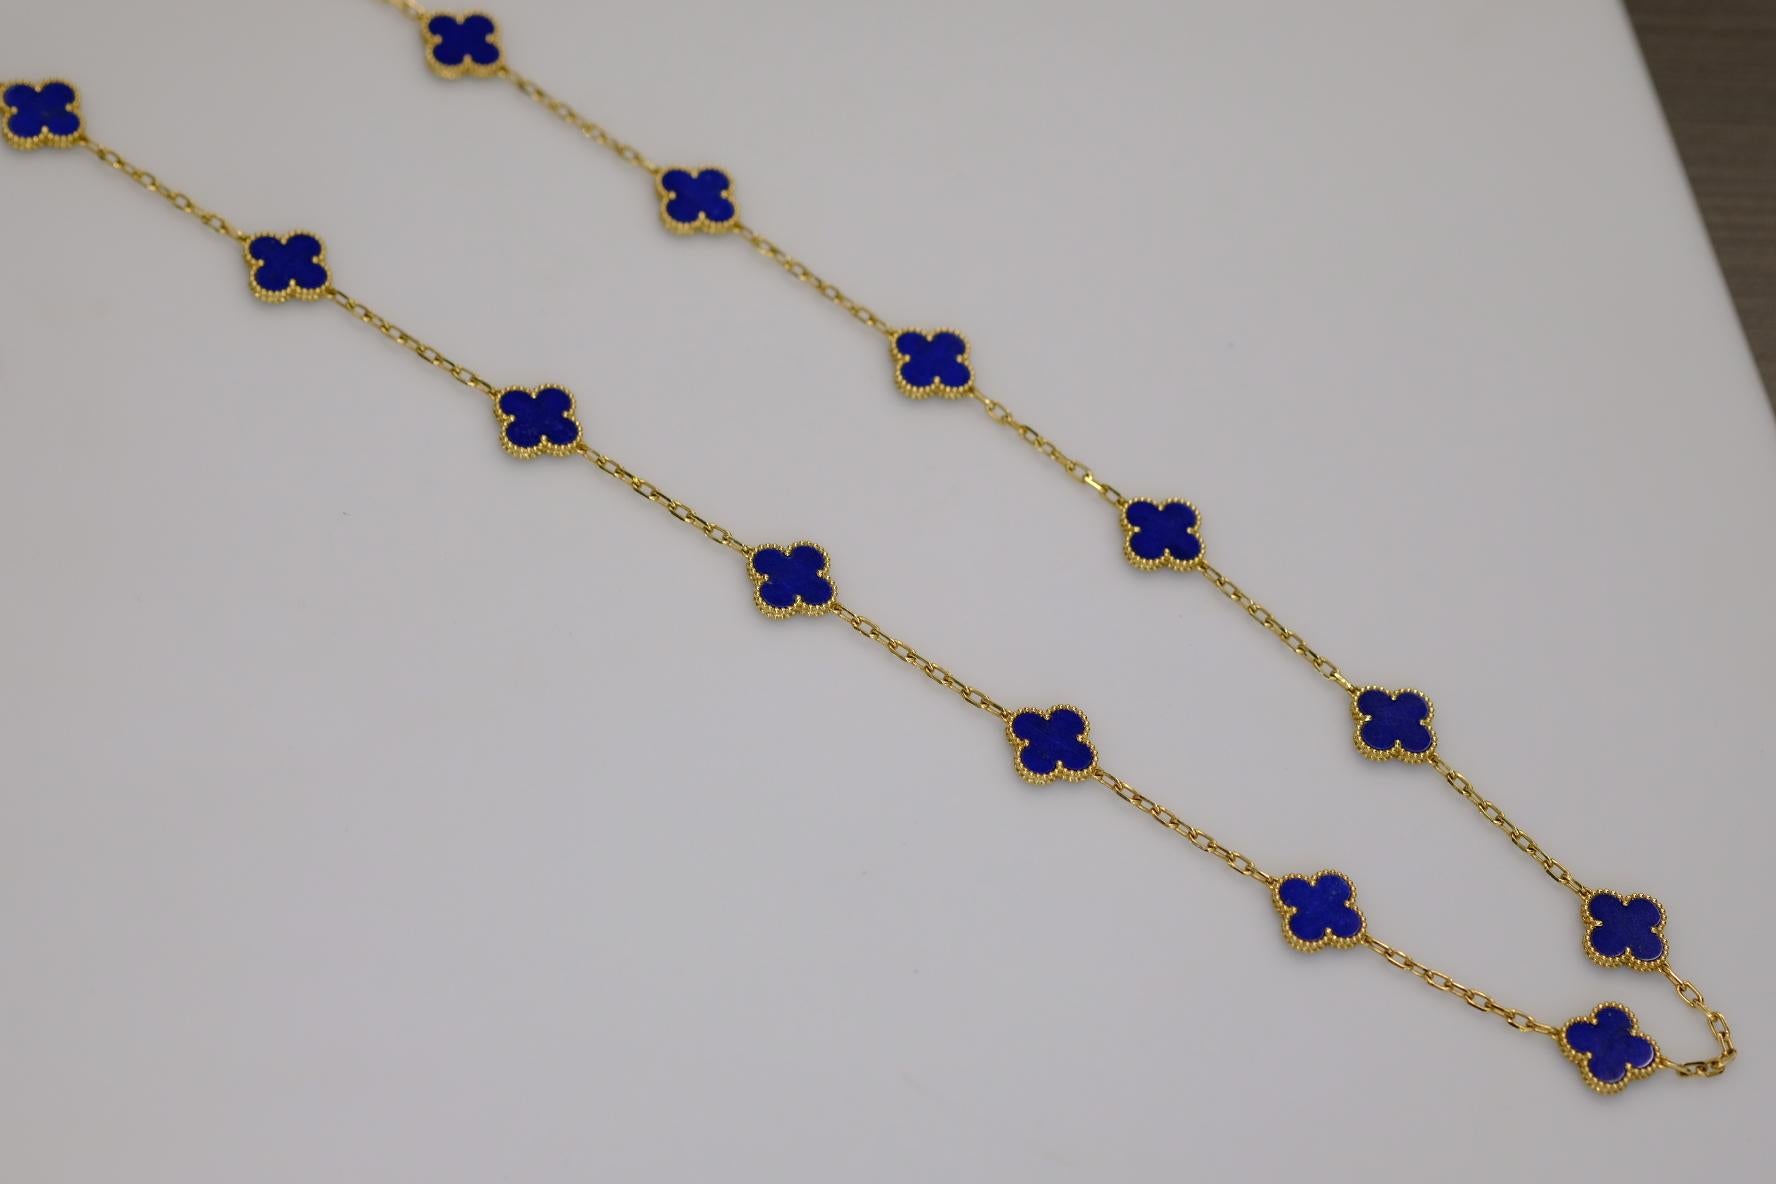 20 motif necklace